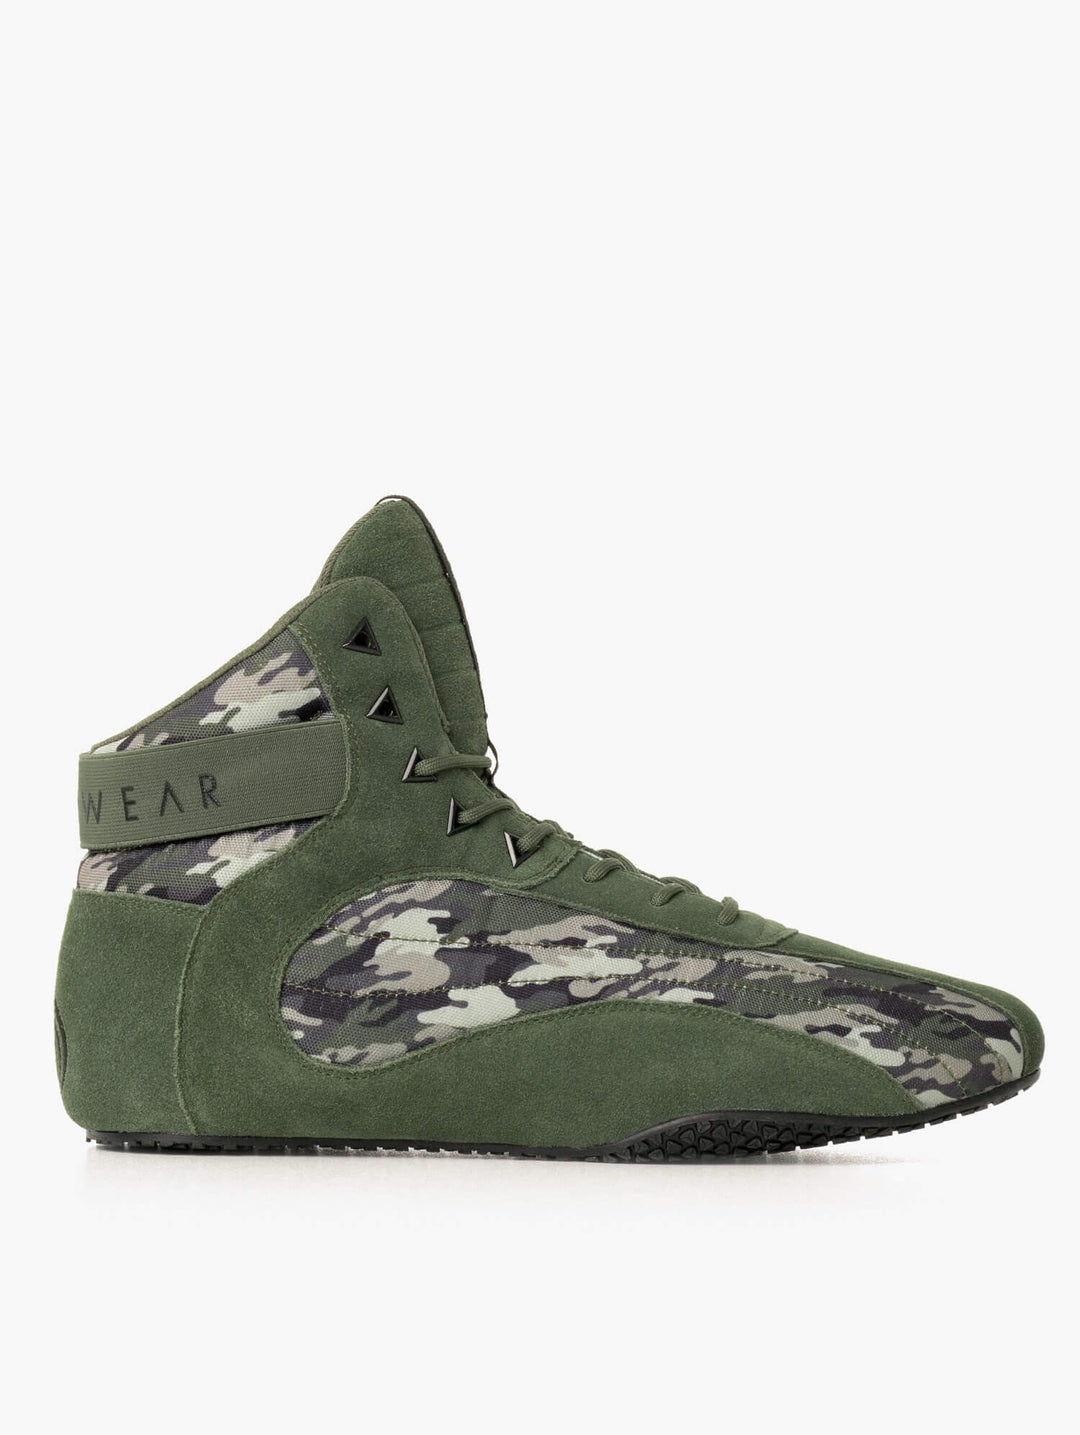 D-Mak II - Green Camo Shoes Ryderwear 